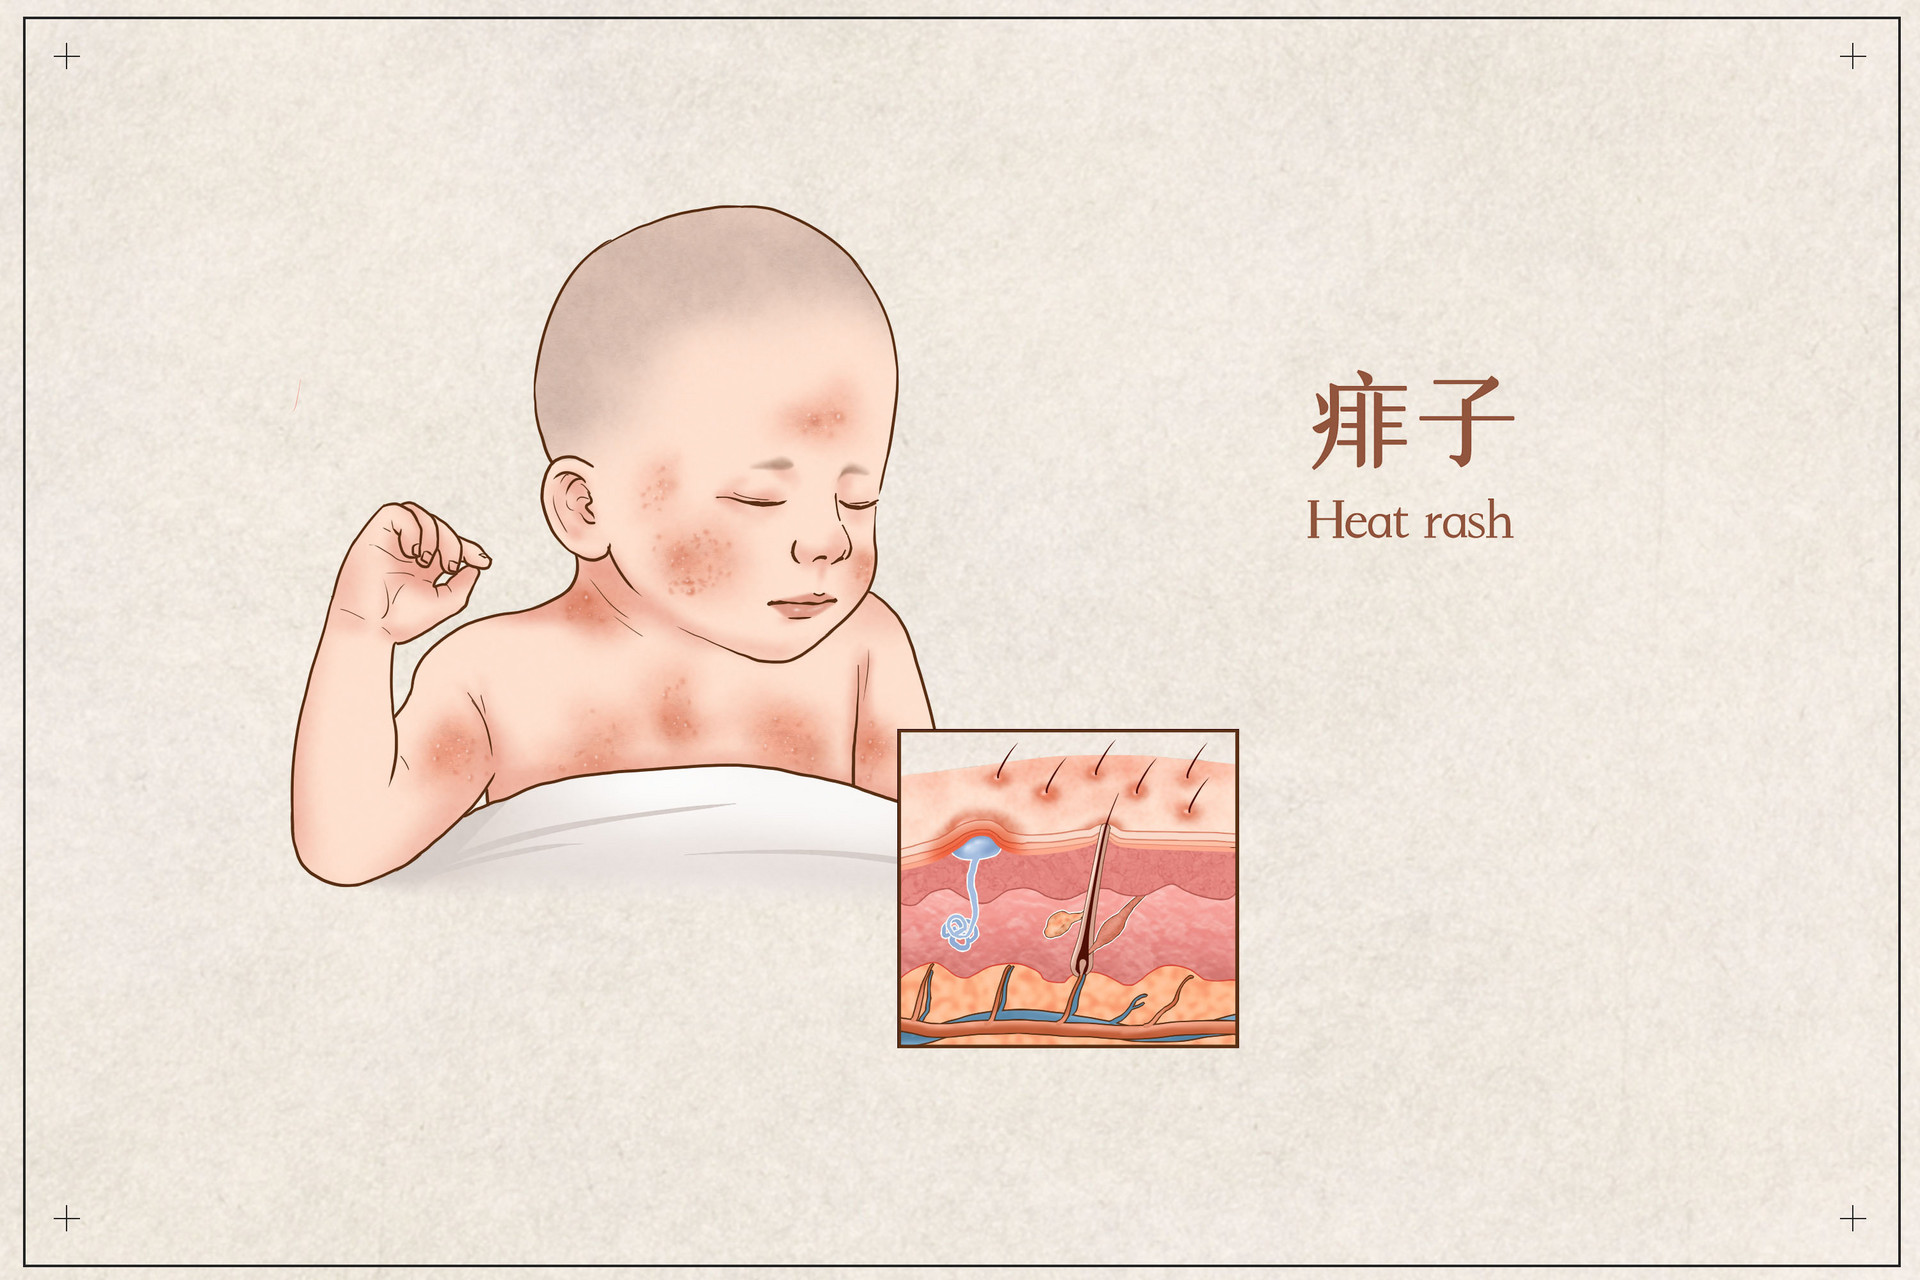 到底是新生儿痤疮还是湿疹，没有定论 | Exif_JPEG_PICTURE | 活到老学到老 | Flickr